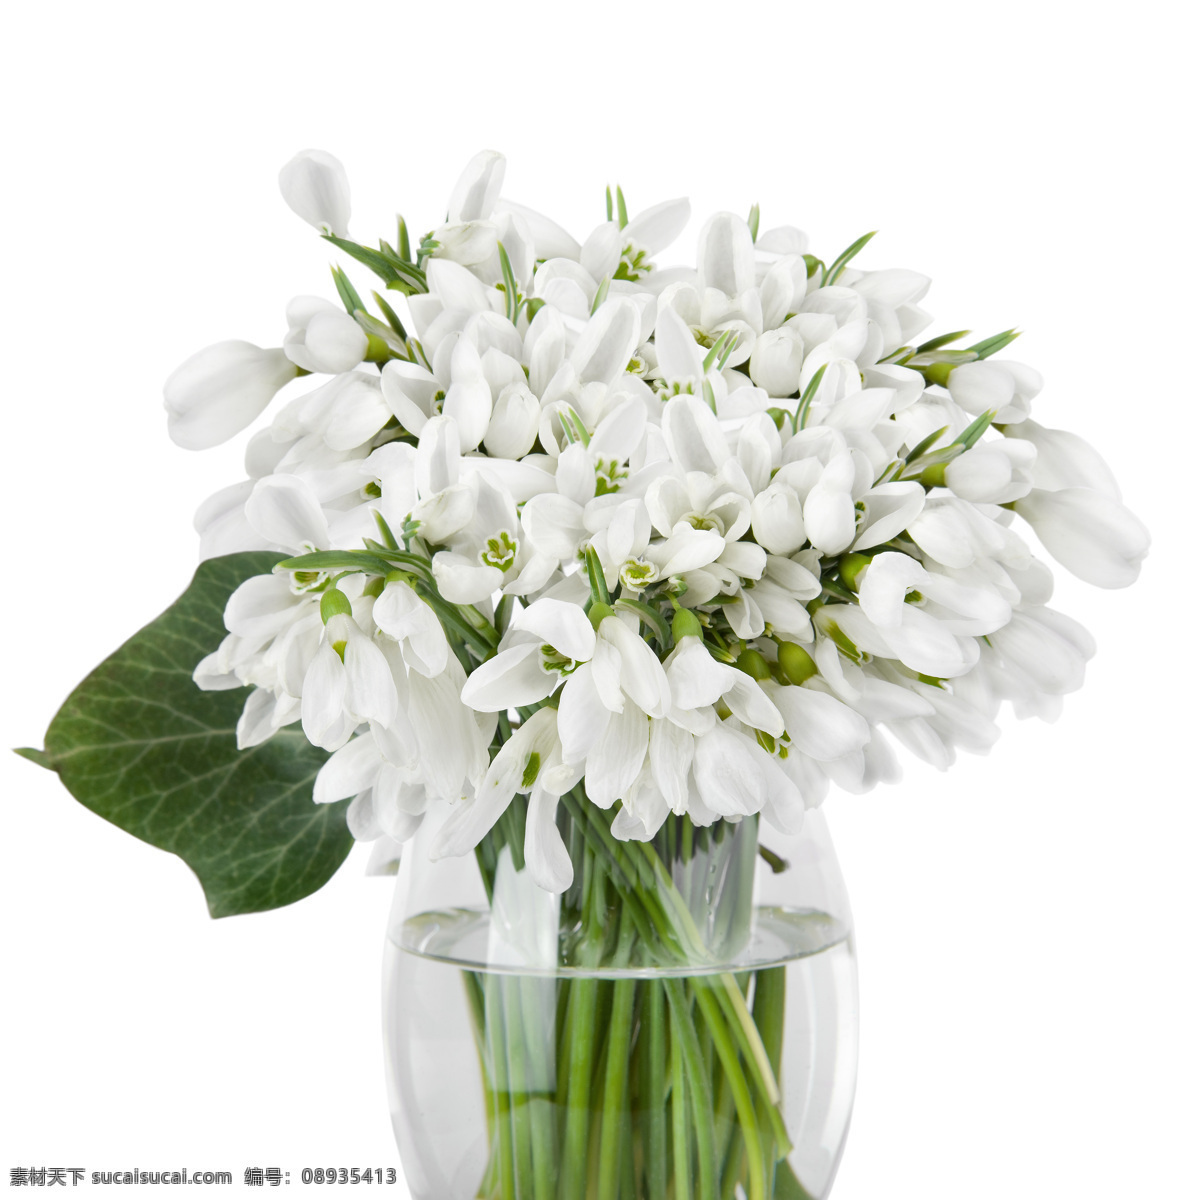 花瓶 里 白色 小花 雪滴花 美丽花朵 鲜花背景 白色小花 花卉 春天花朵 花草树木 生物世界